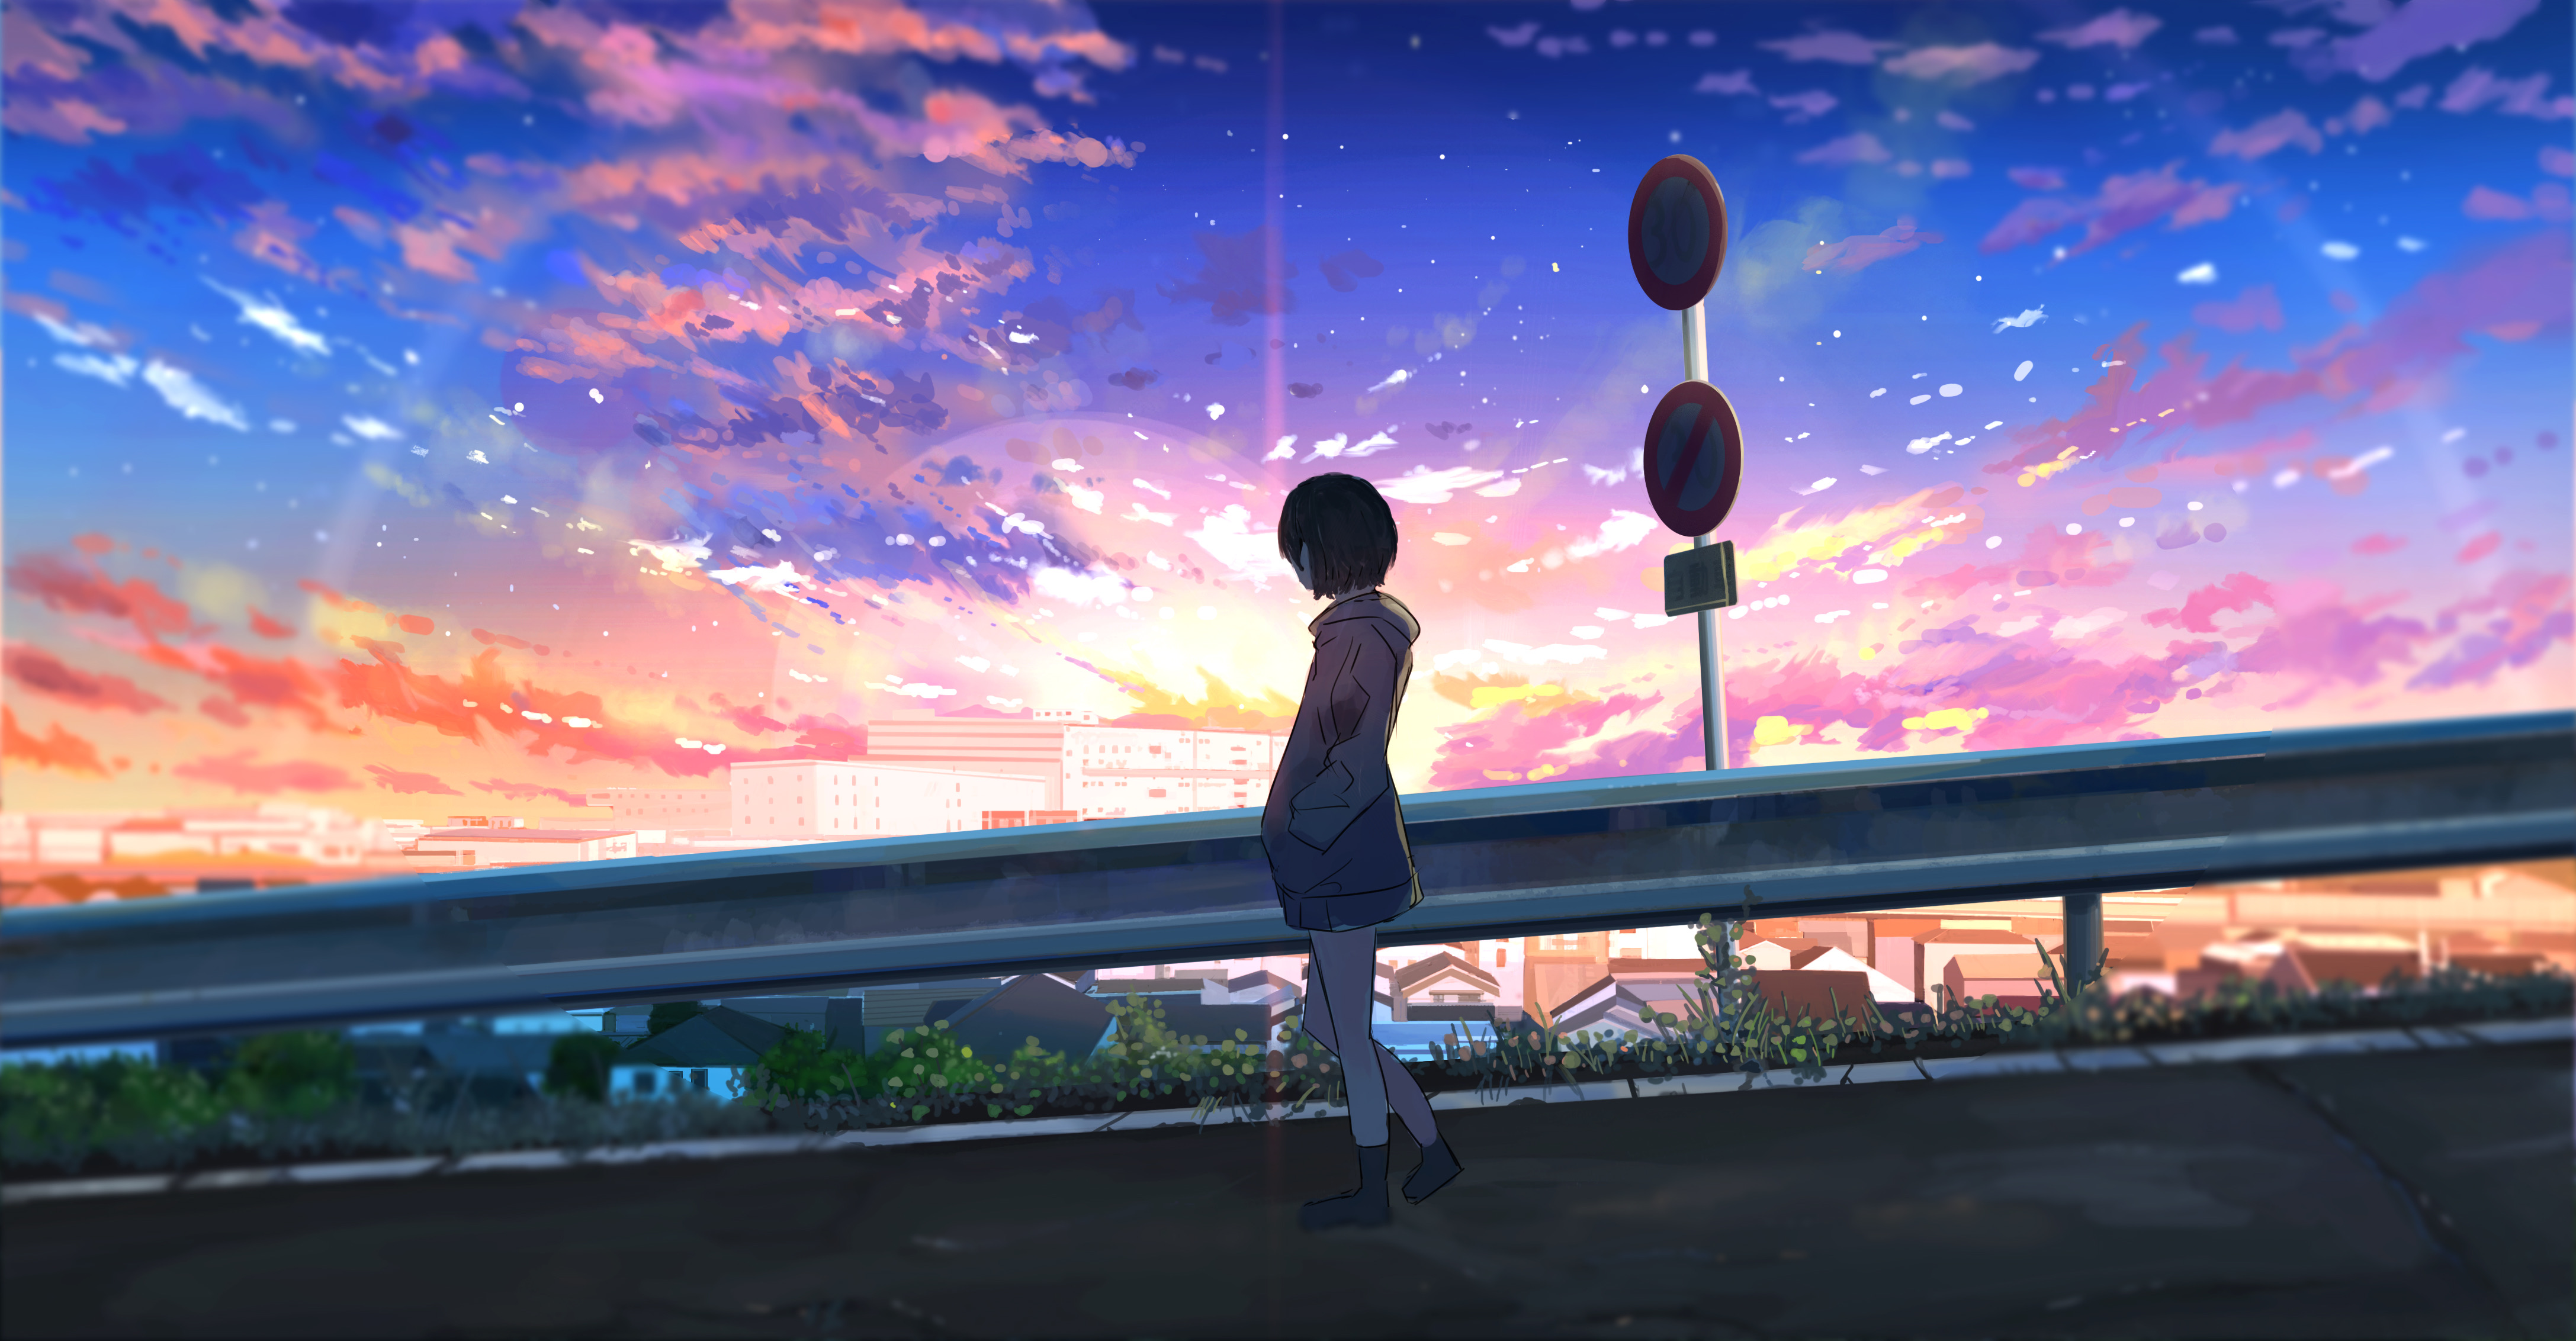 Anime Girl 4k Ultra HD Wallpaper